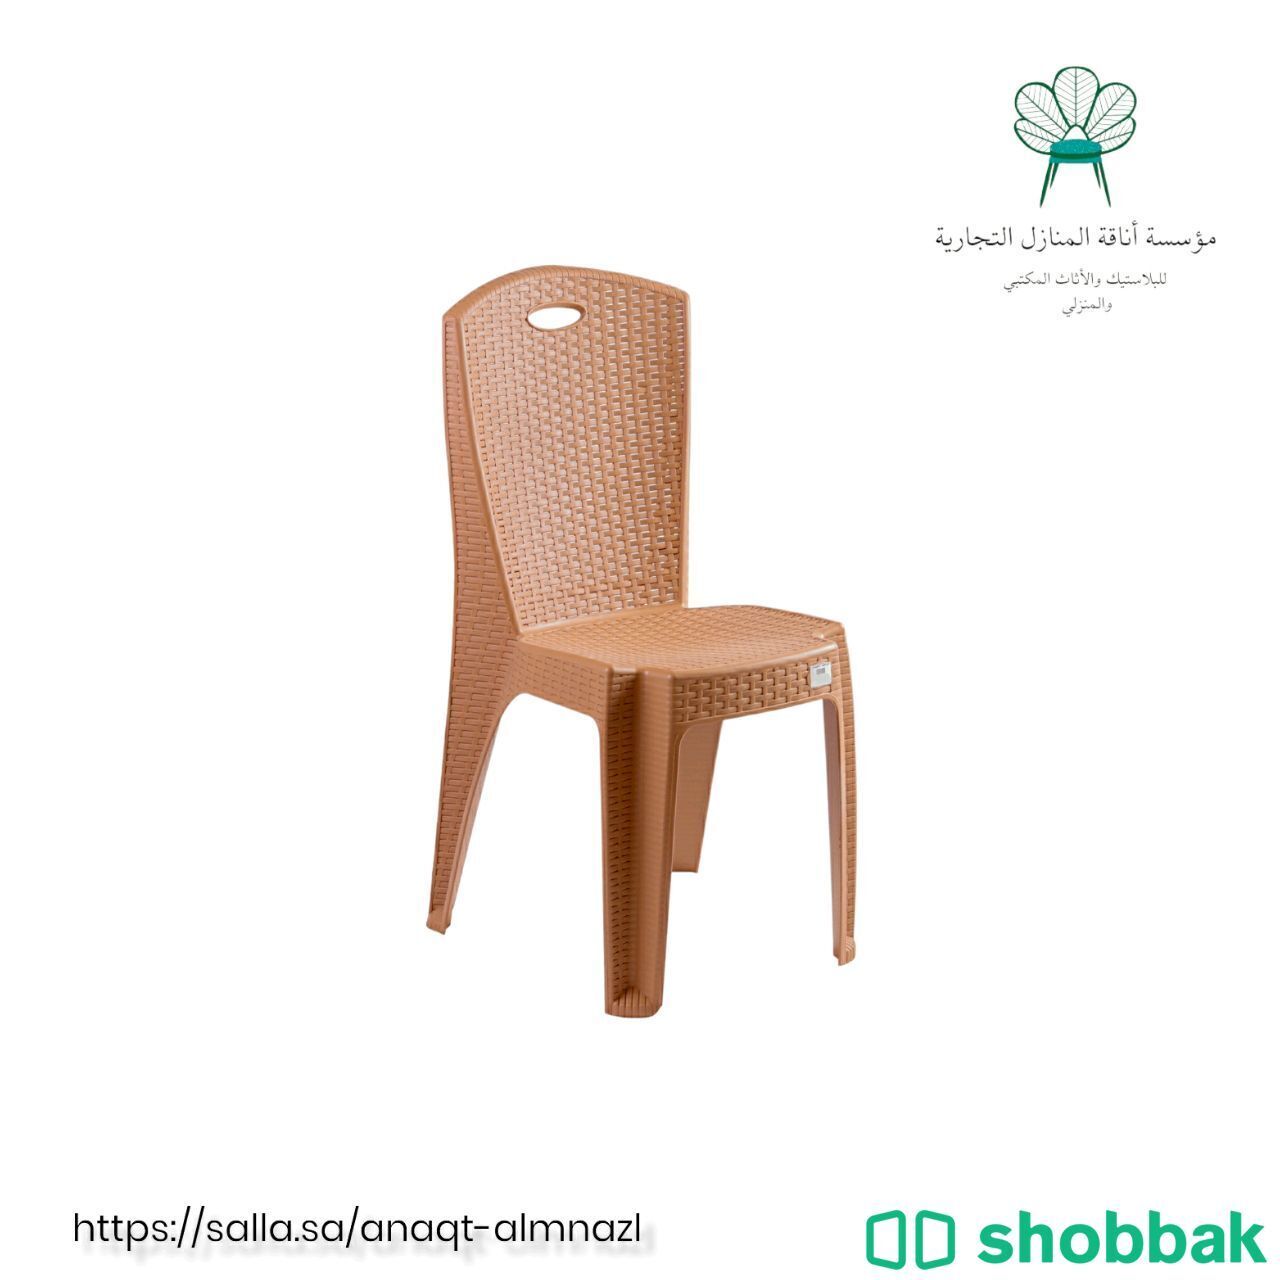 "كرسي الليث البلاستيكي: الراحة والأناقة في تصميم واحد شباك السعودية